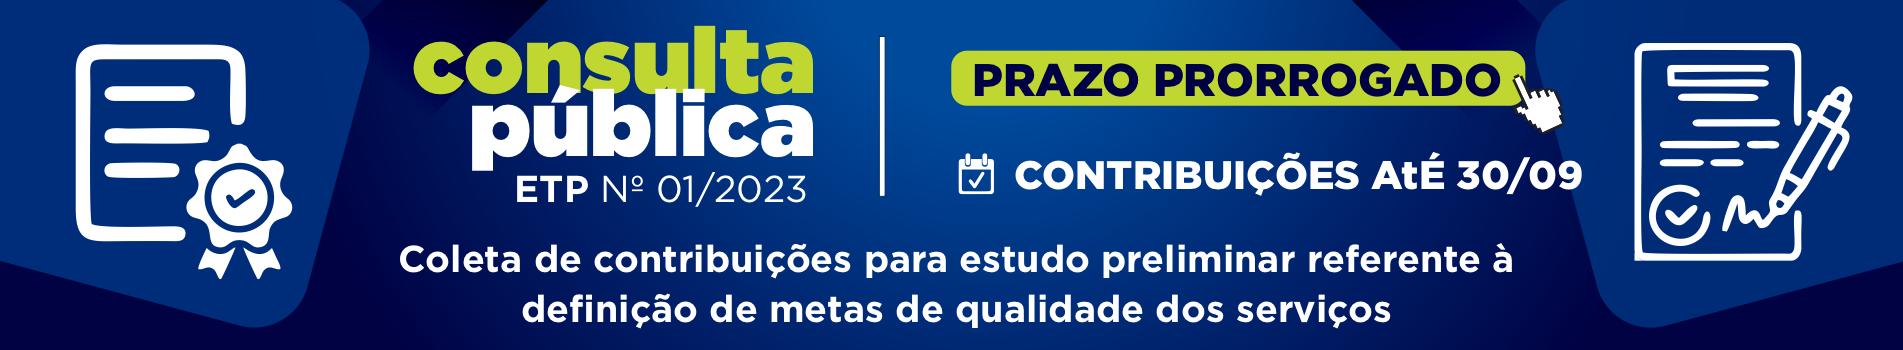 Consulta Pública 01-2023 - Prorrogação 30/09